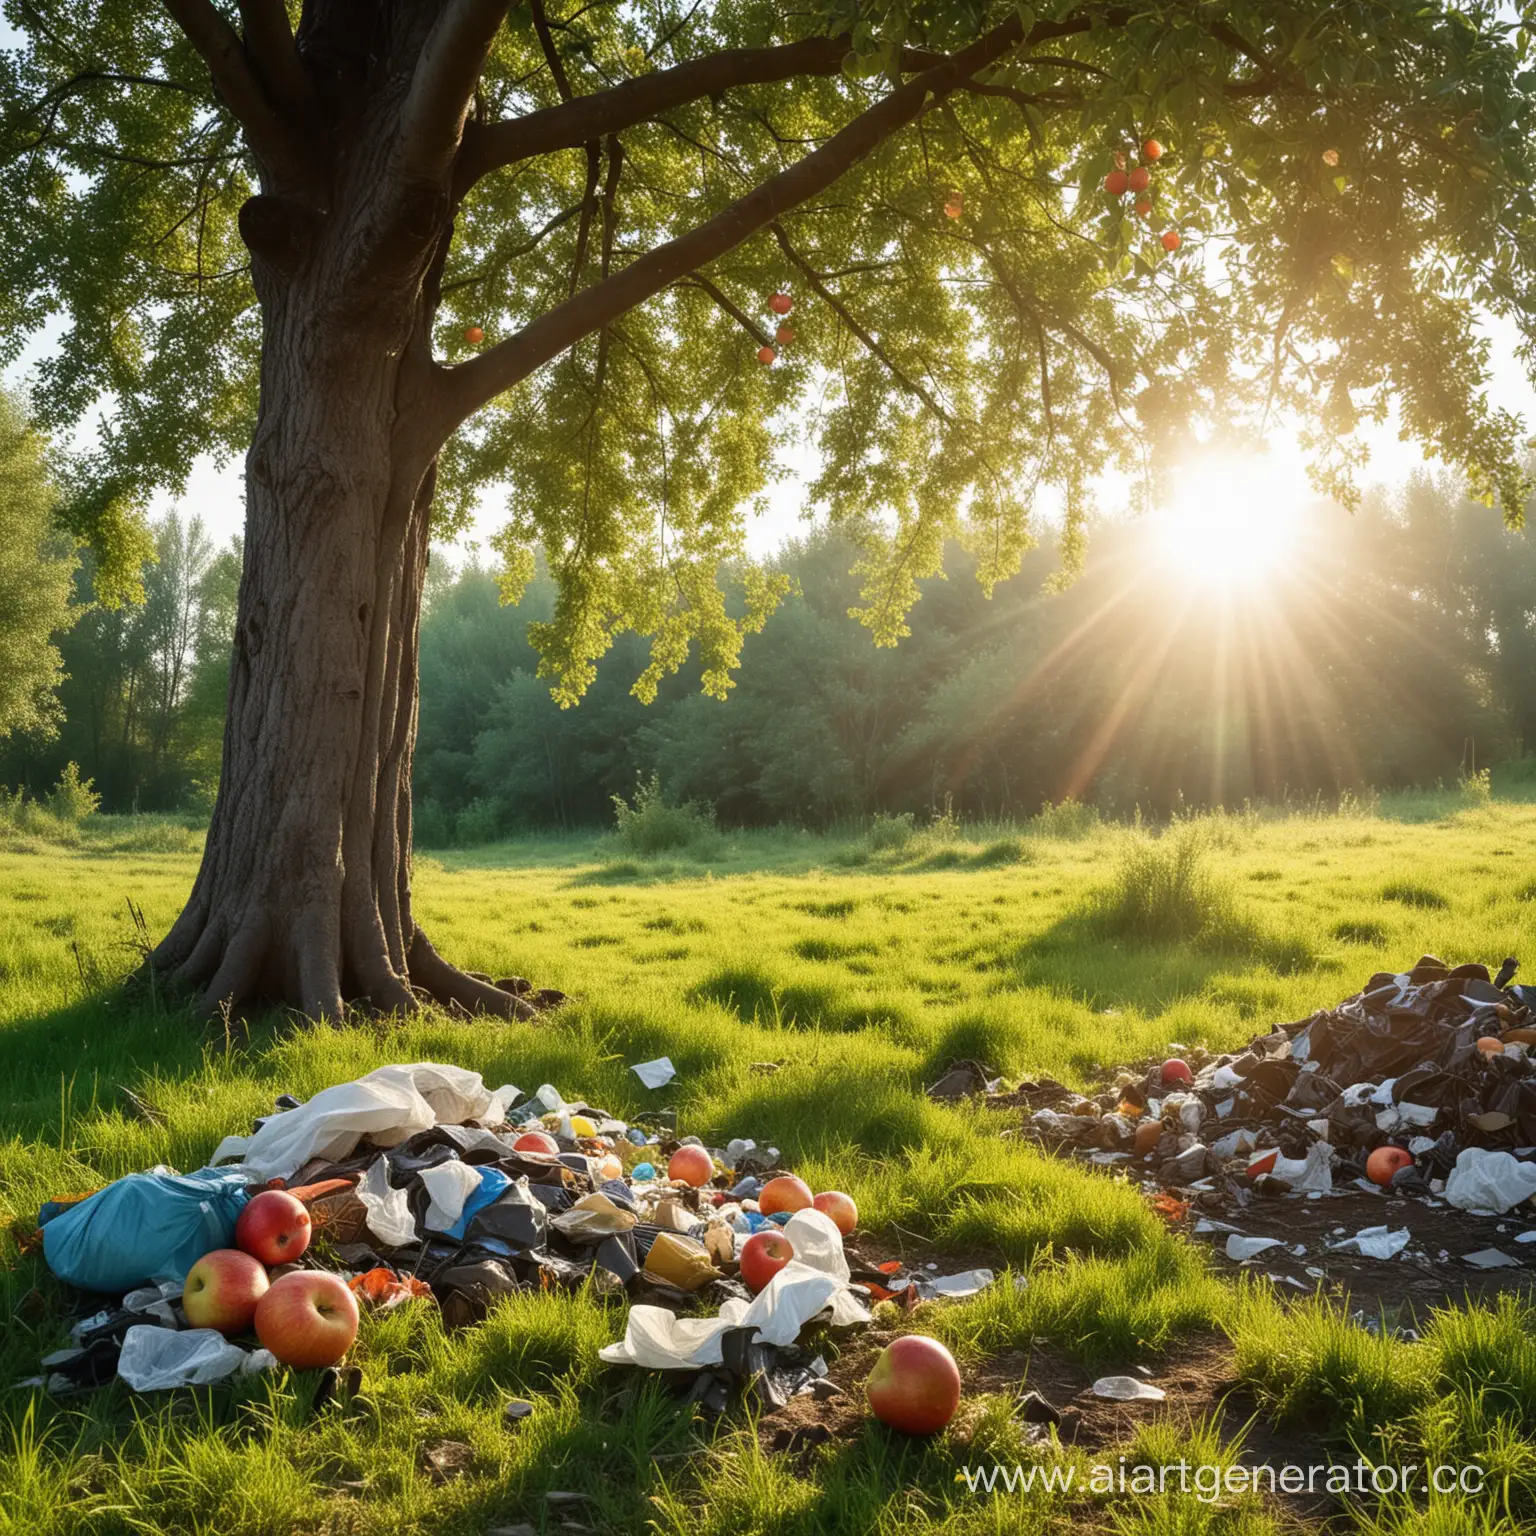 Справа загрязнённый лес с мусором, справа яблоня на зелёной траве под лучами солнца.